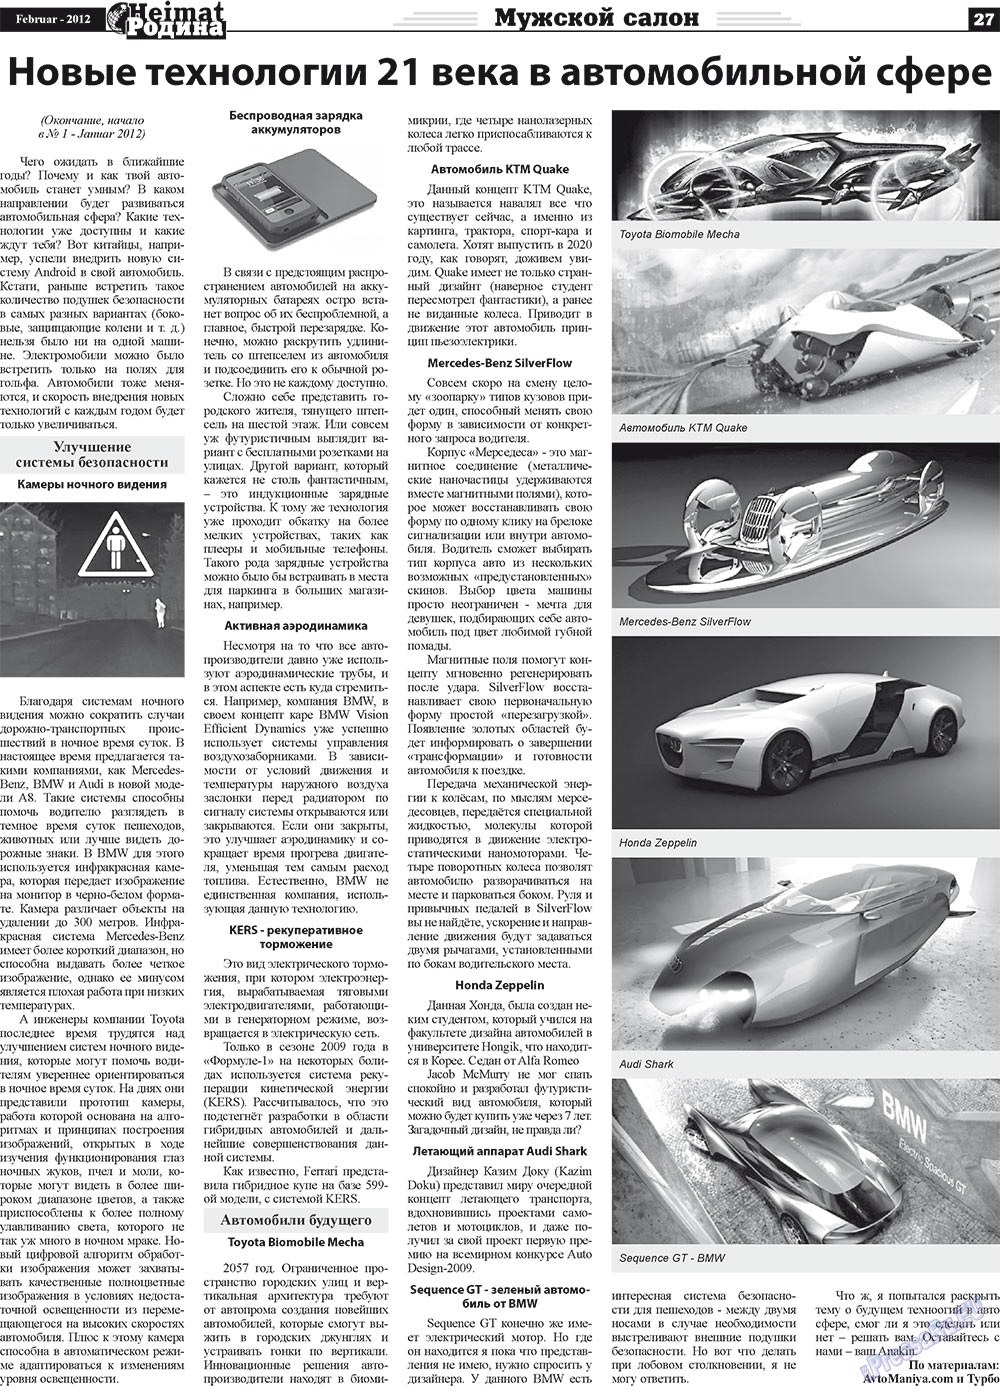 Heimat-Родина (Zeitung). 2012 Jahr, Ausgabe 2, Seite 27